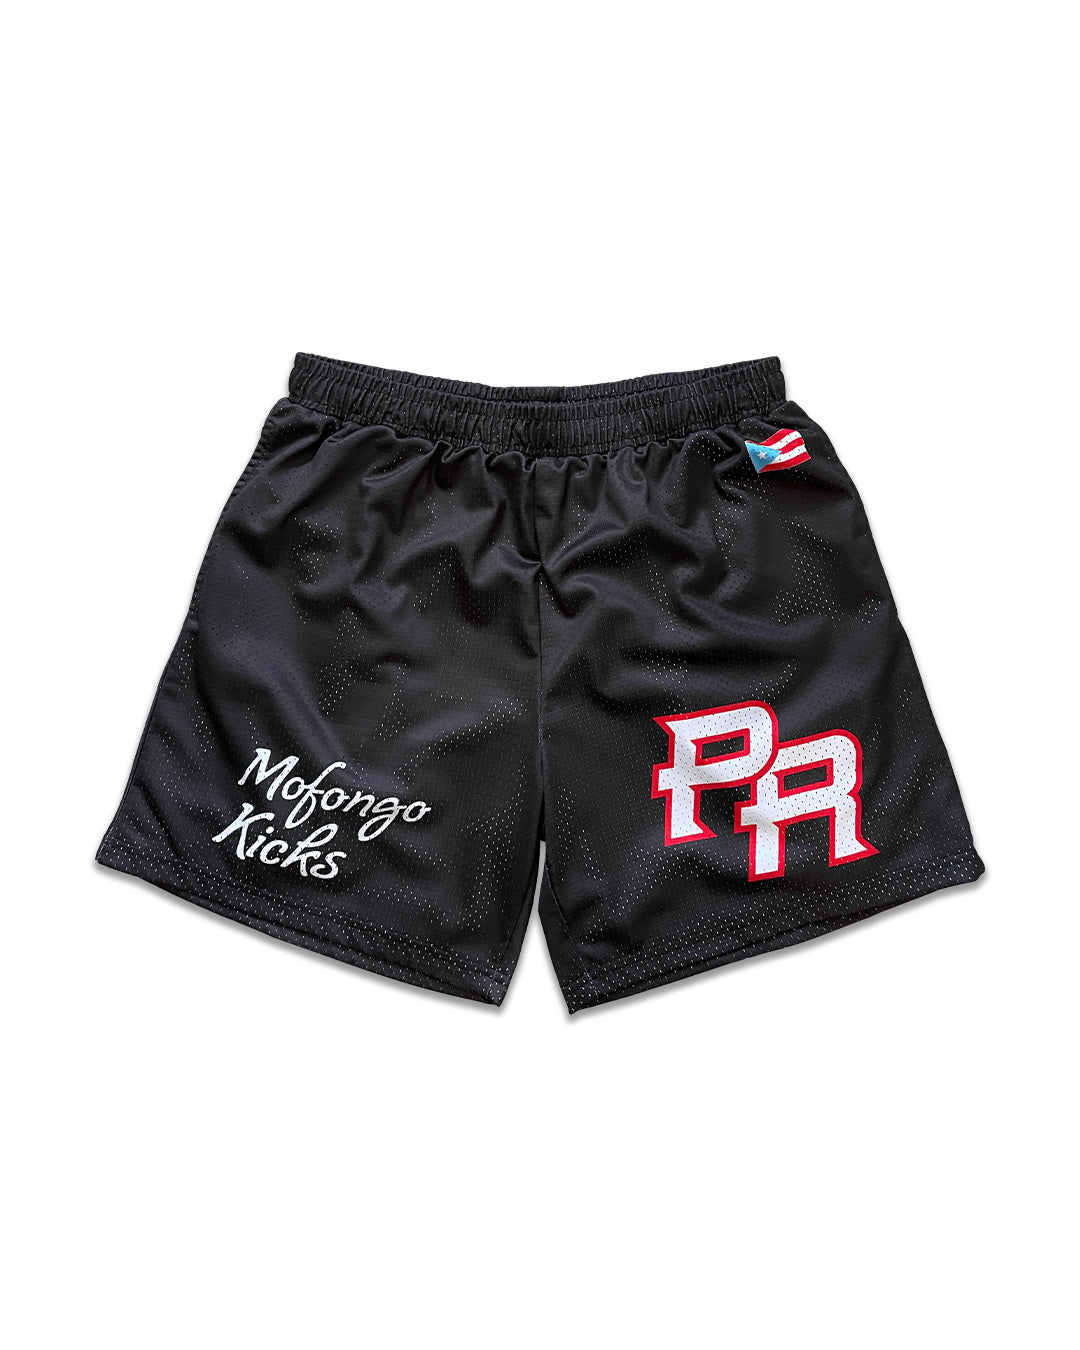 Team Puerto Rico Shorts (Black) – mofongo kicks